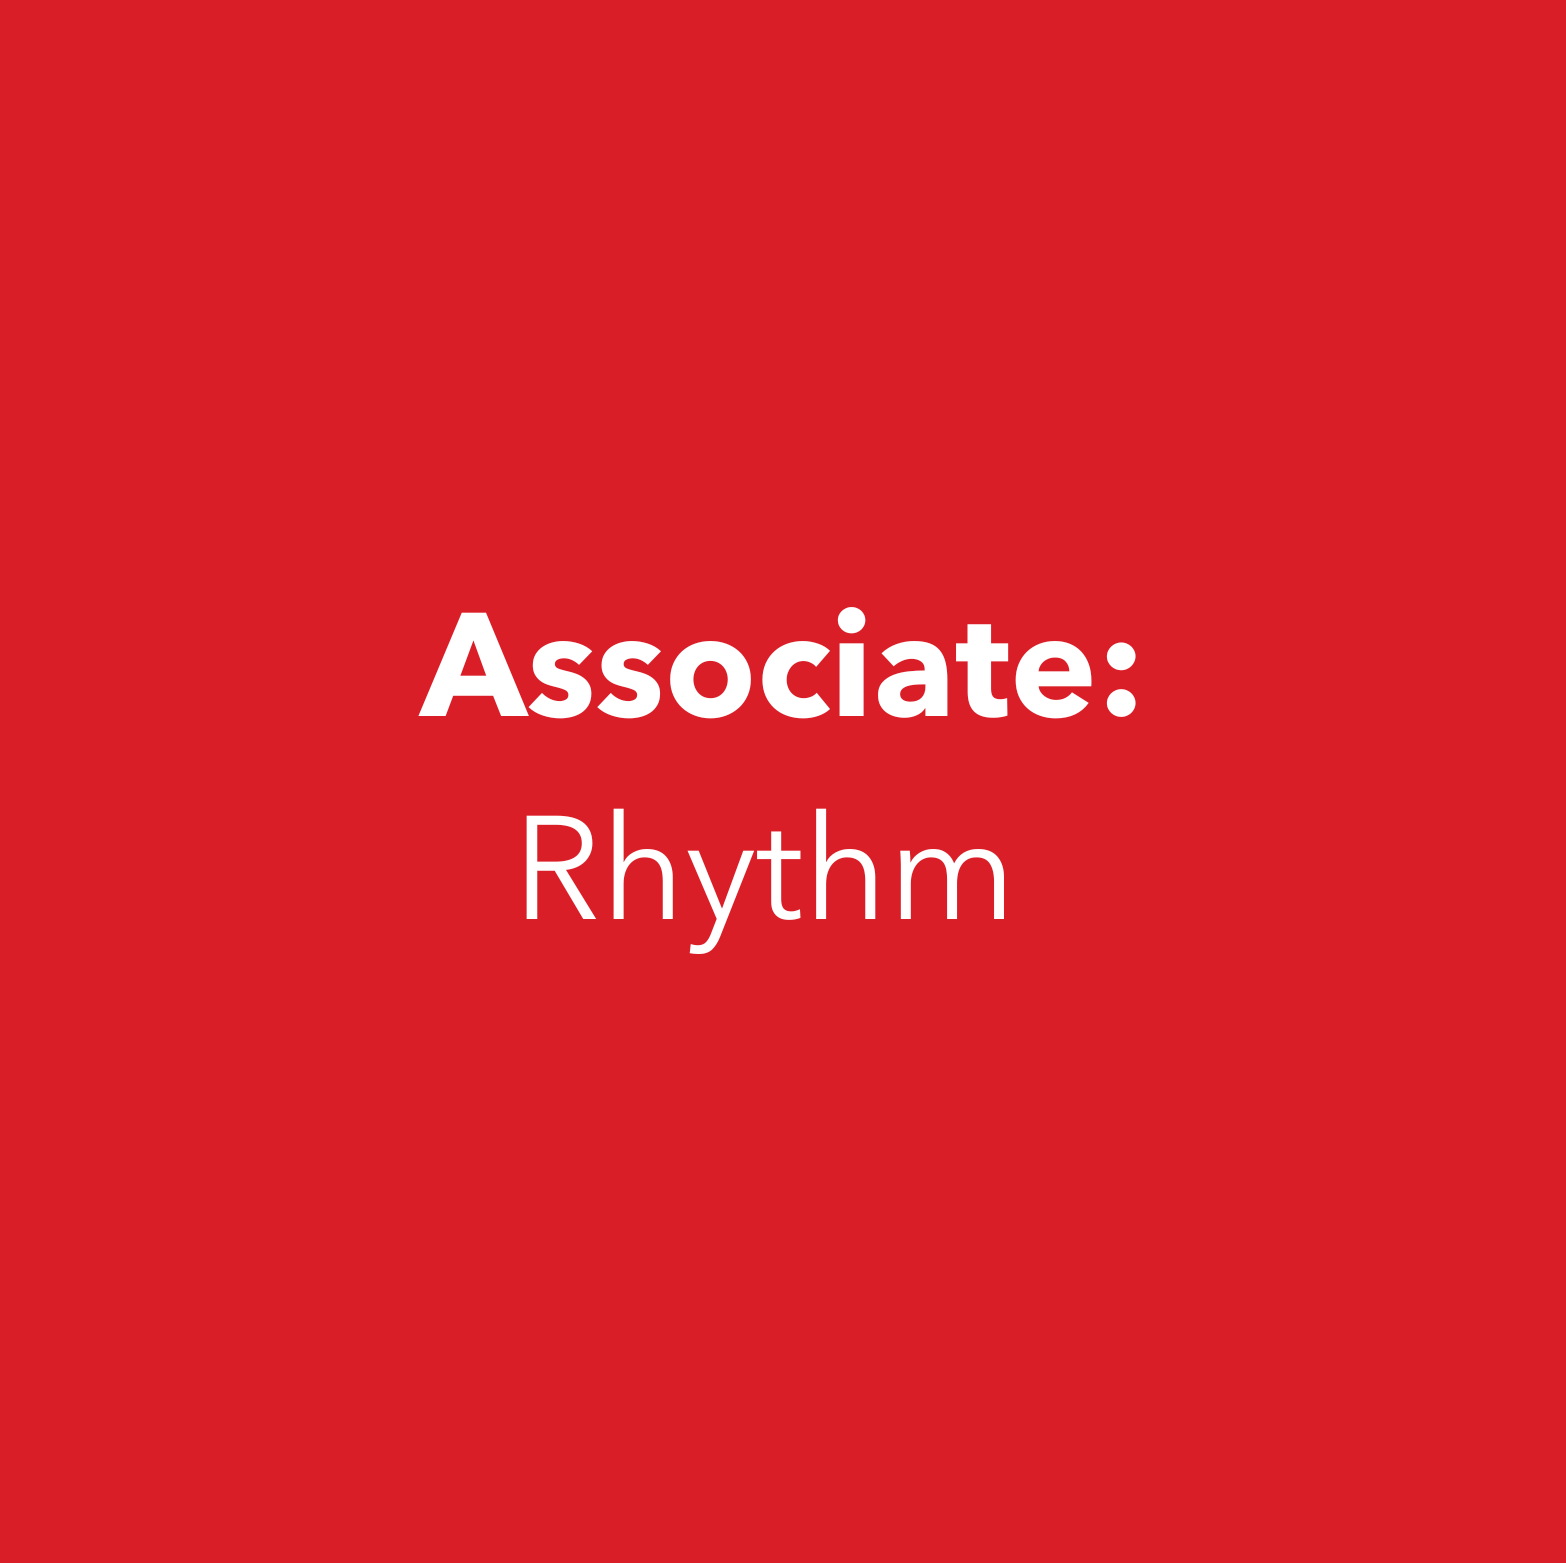 Associate: Rhythm